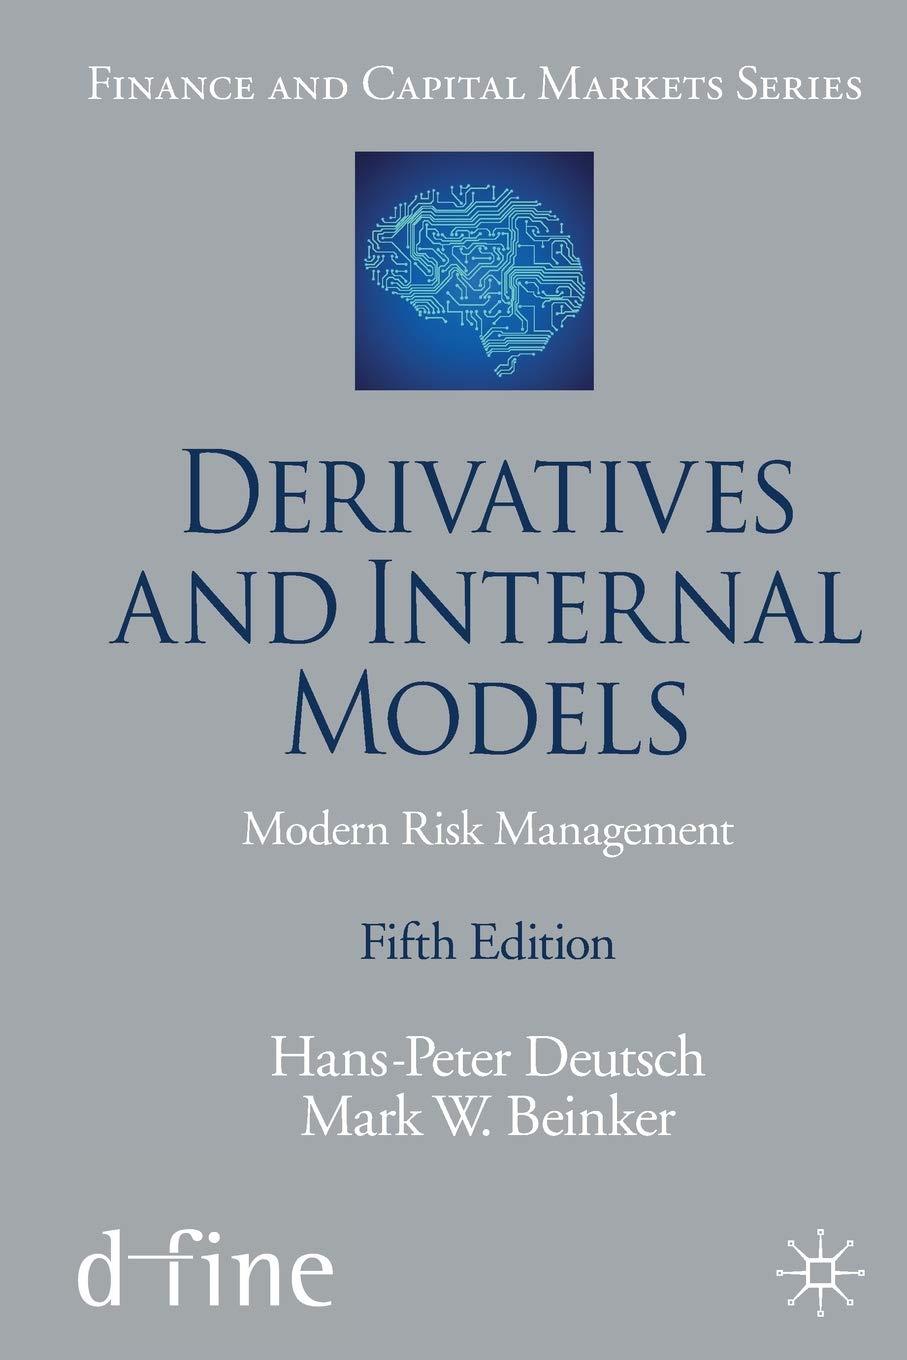 derivatives and internal models 5th edition hans peter deutsch, mark w. beinker 3030229017, 9783030229016